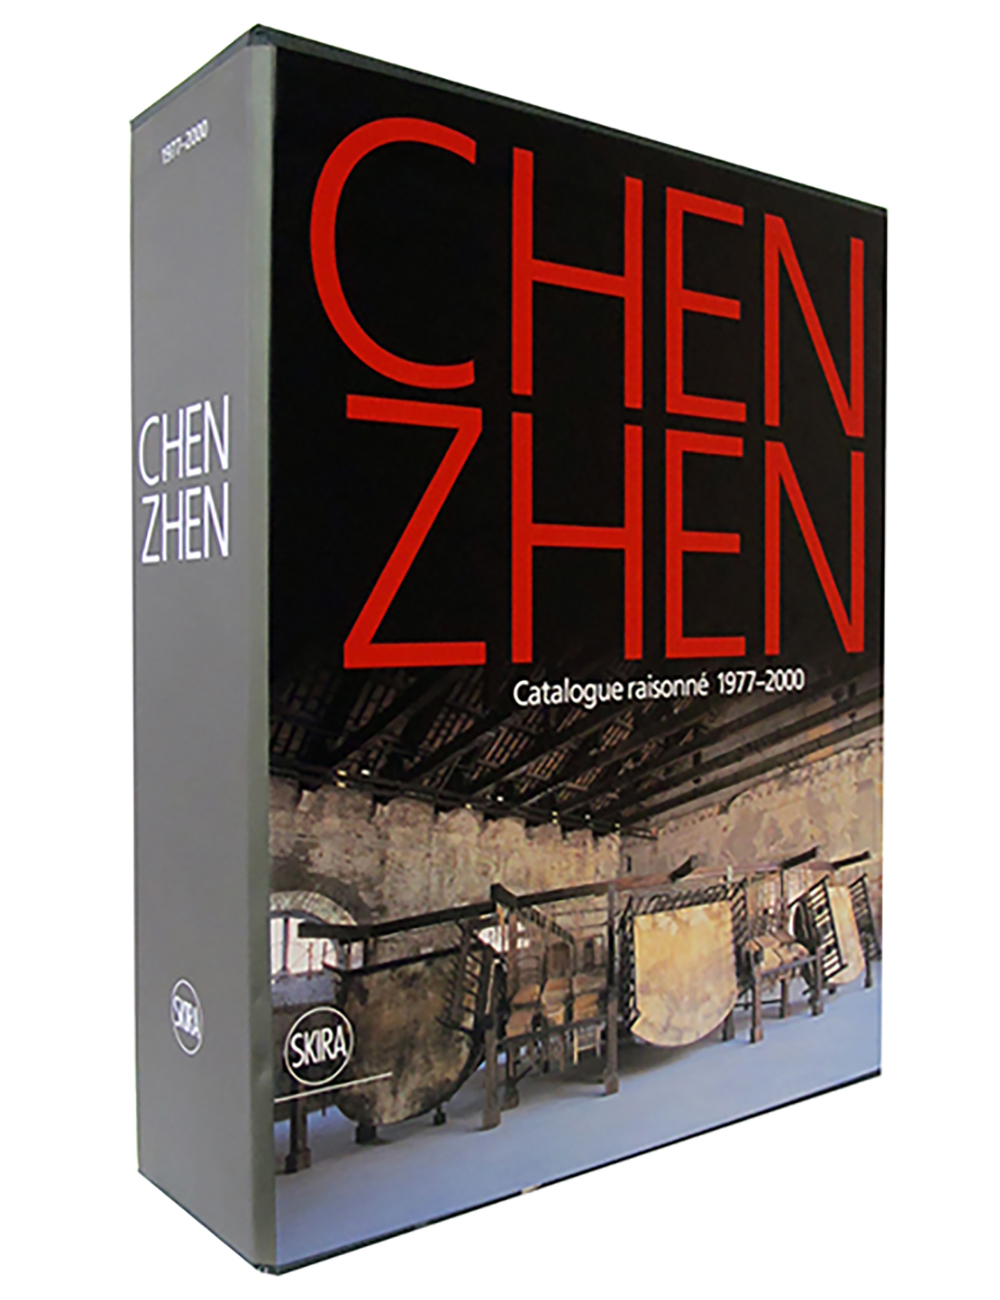 Chen Zhen. Catalogue Raisonné. Volume I (1977 - 1996) and Volume II (1997 - 2000)